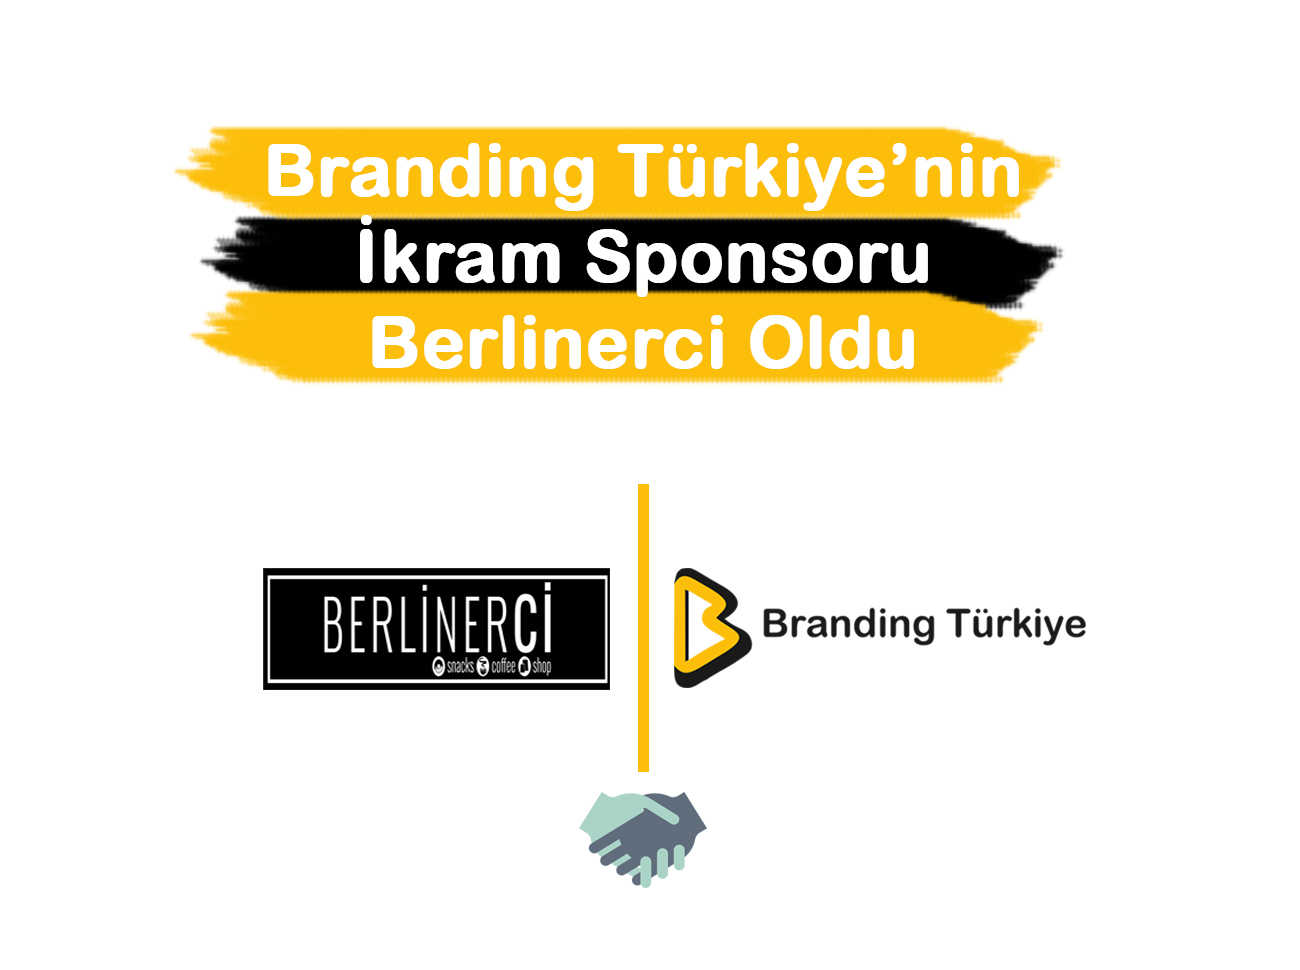 Branding Türkiye’nin İkram Sponsoru Berlinerci Oldu